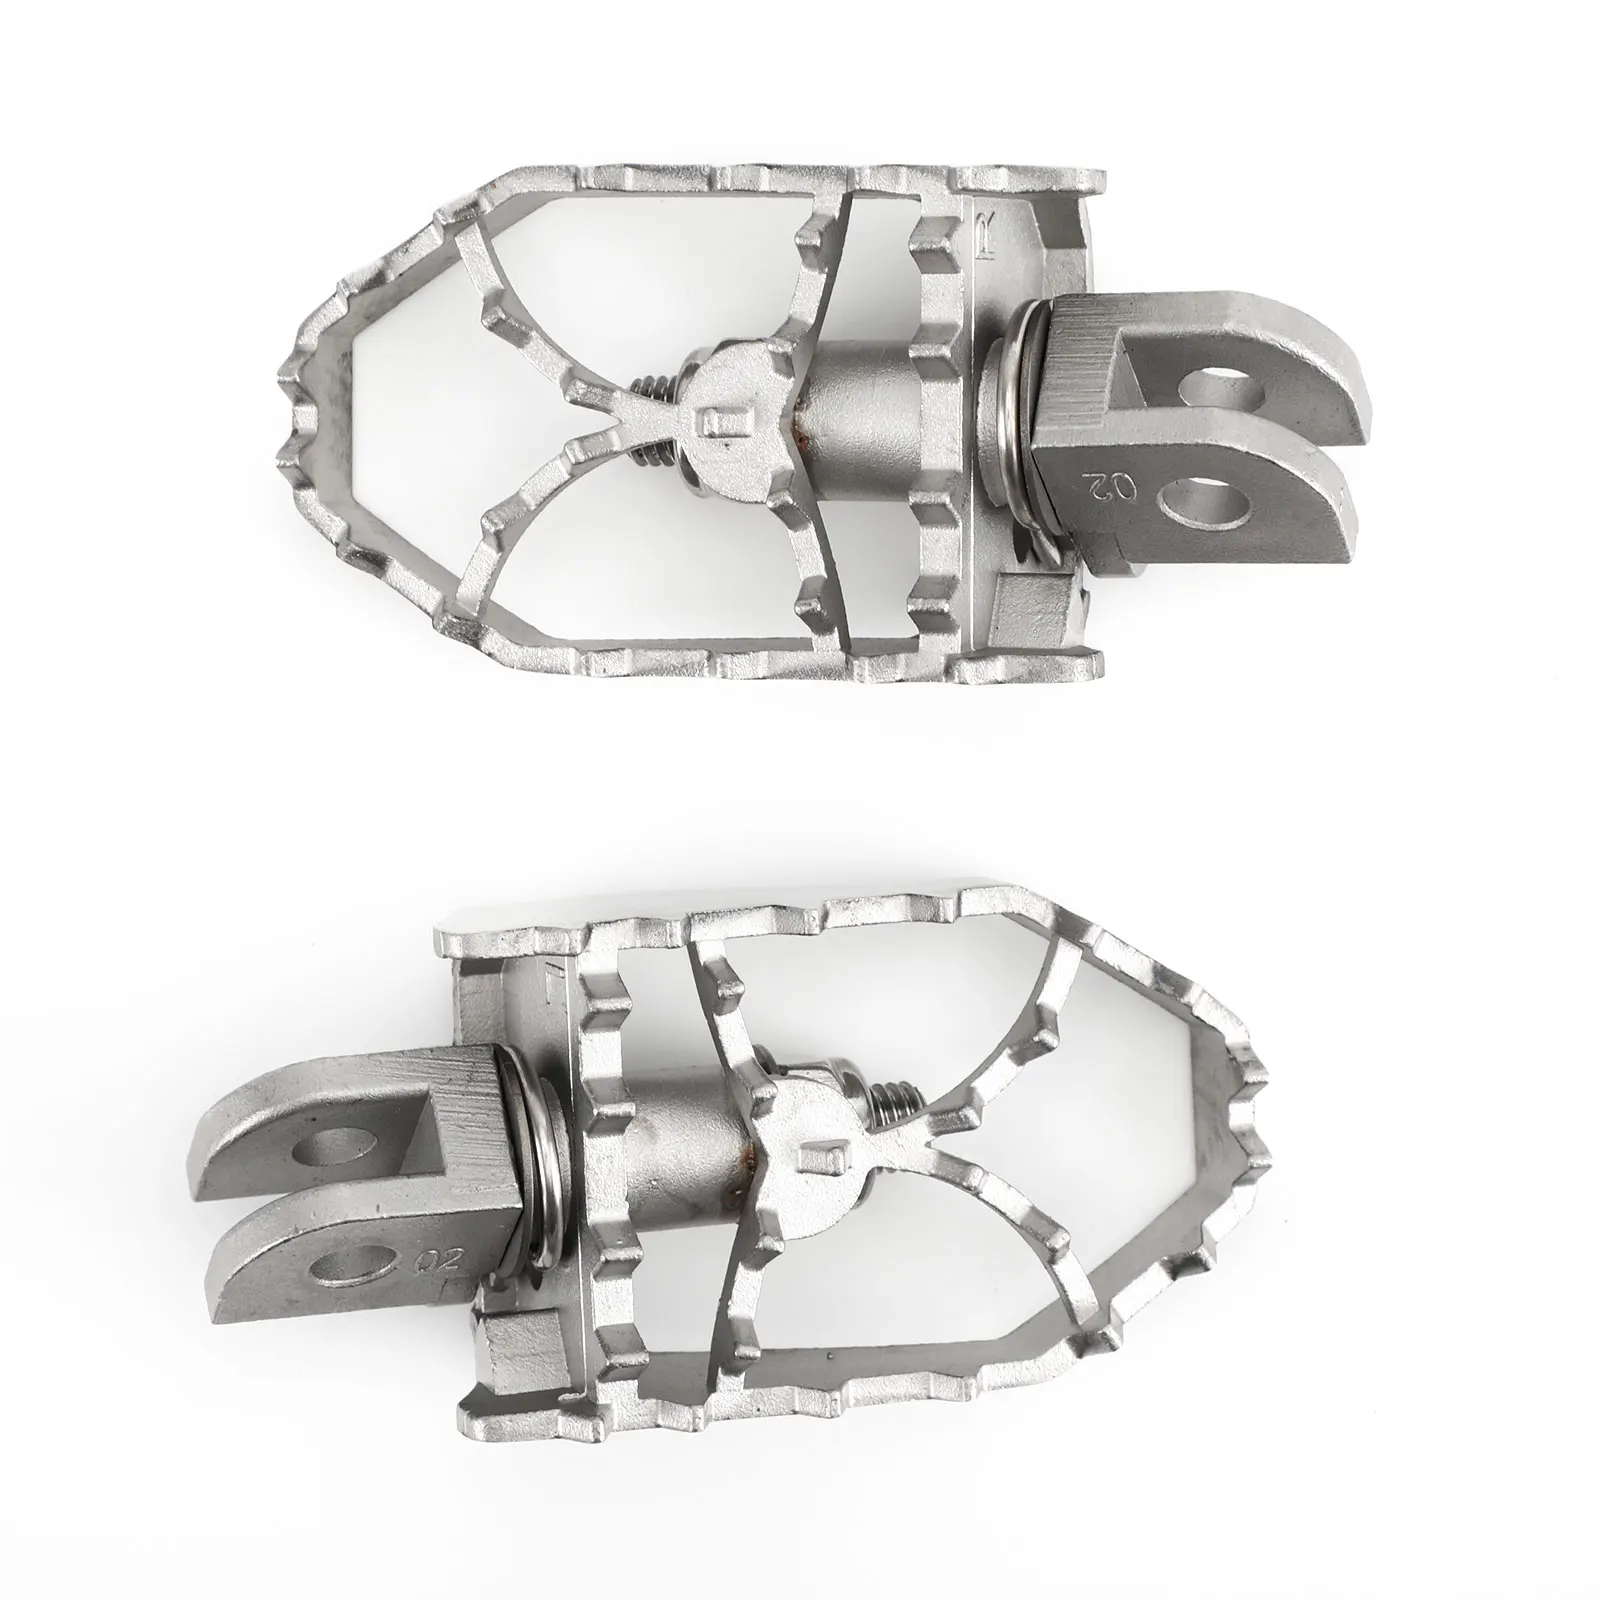 

Передние Подножки Artudatech, подножки для Yamaha TRACER 900/GT FJ-09 2015-2020, аксессуары для мотоциклов, запчасти